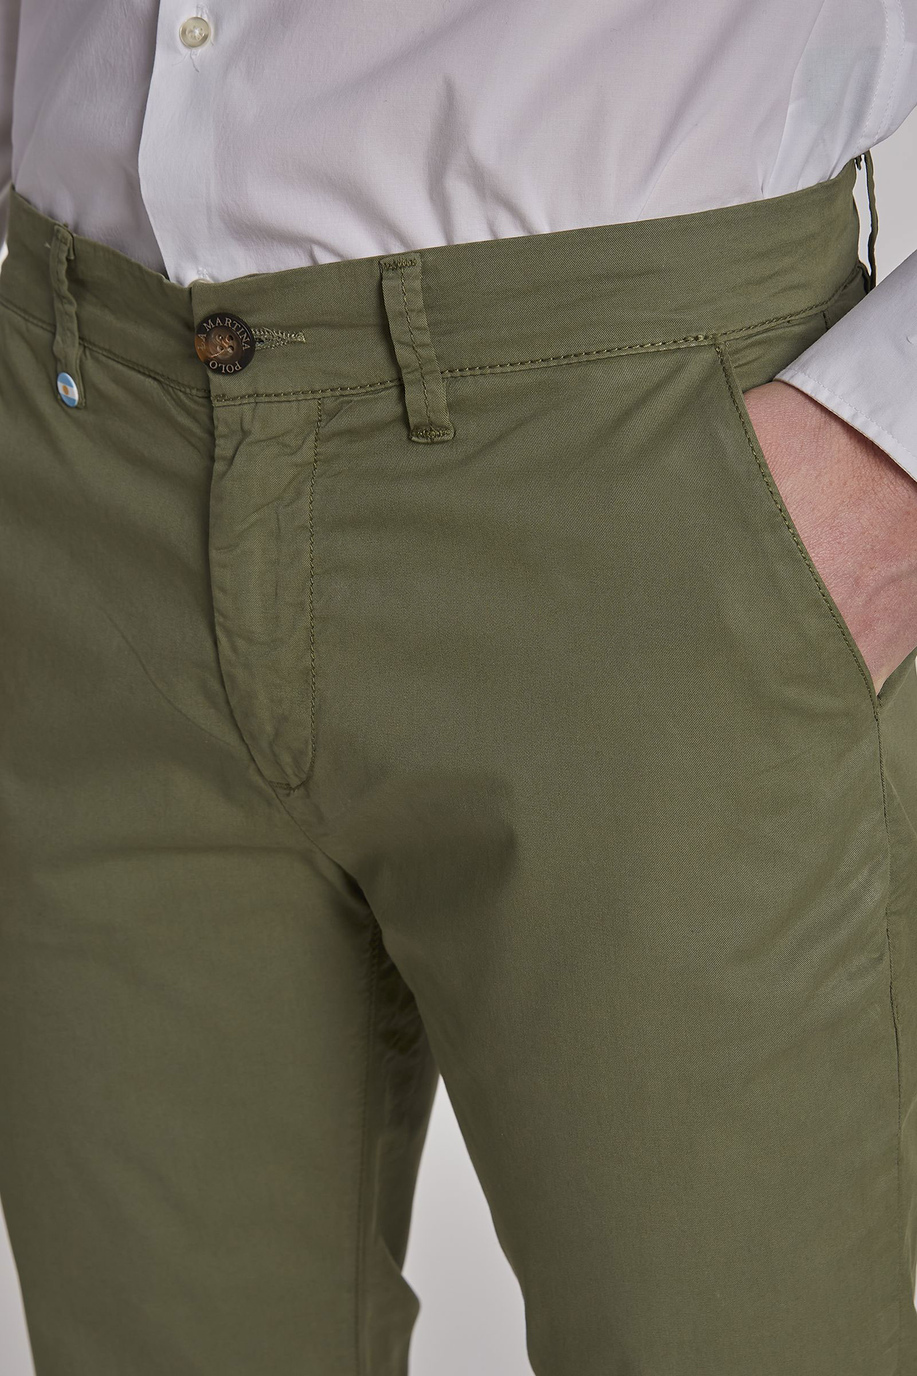 Pantalone da uomo modello chino in cotone elasticizzato slim fit